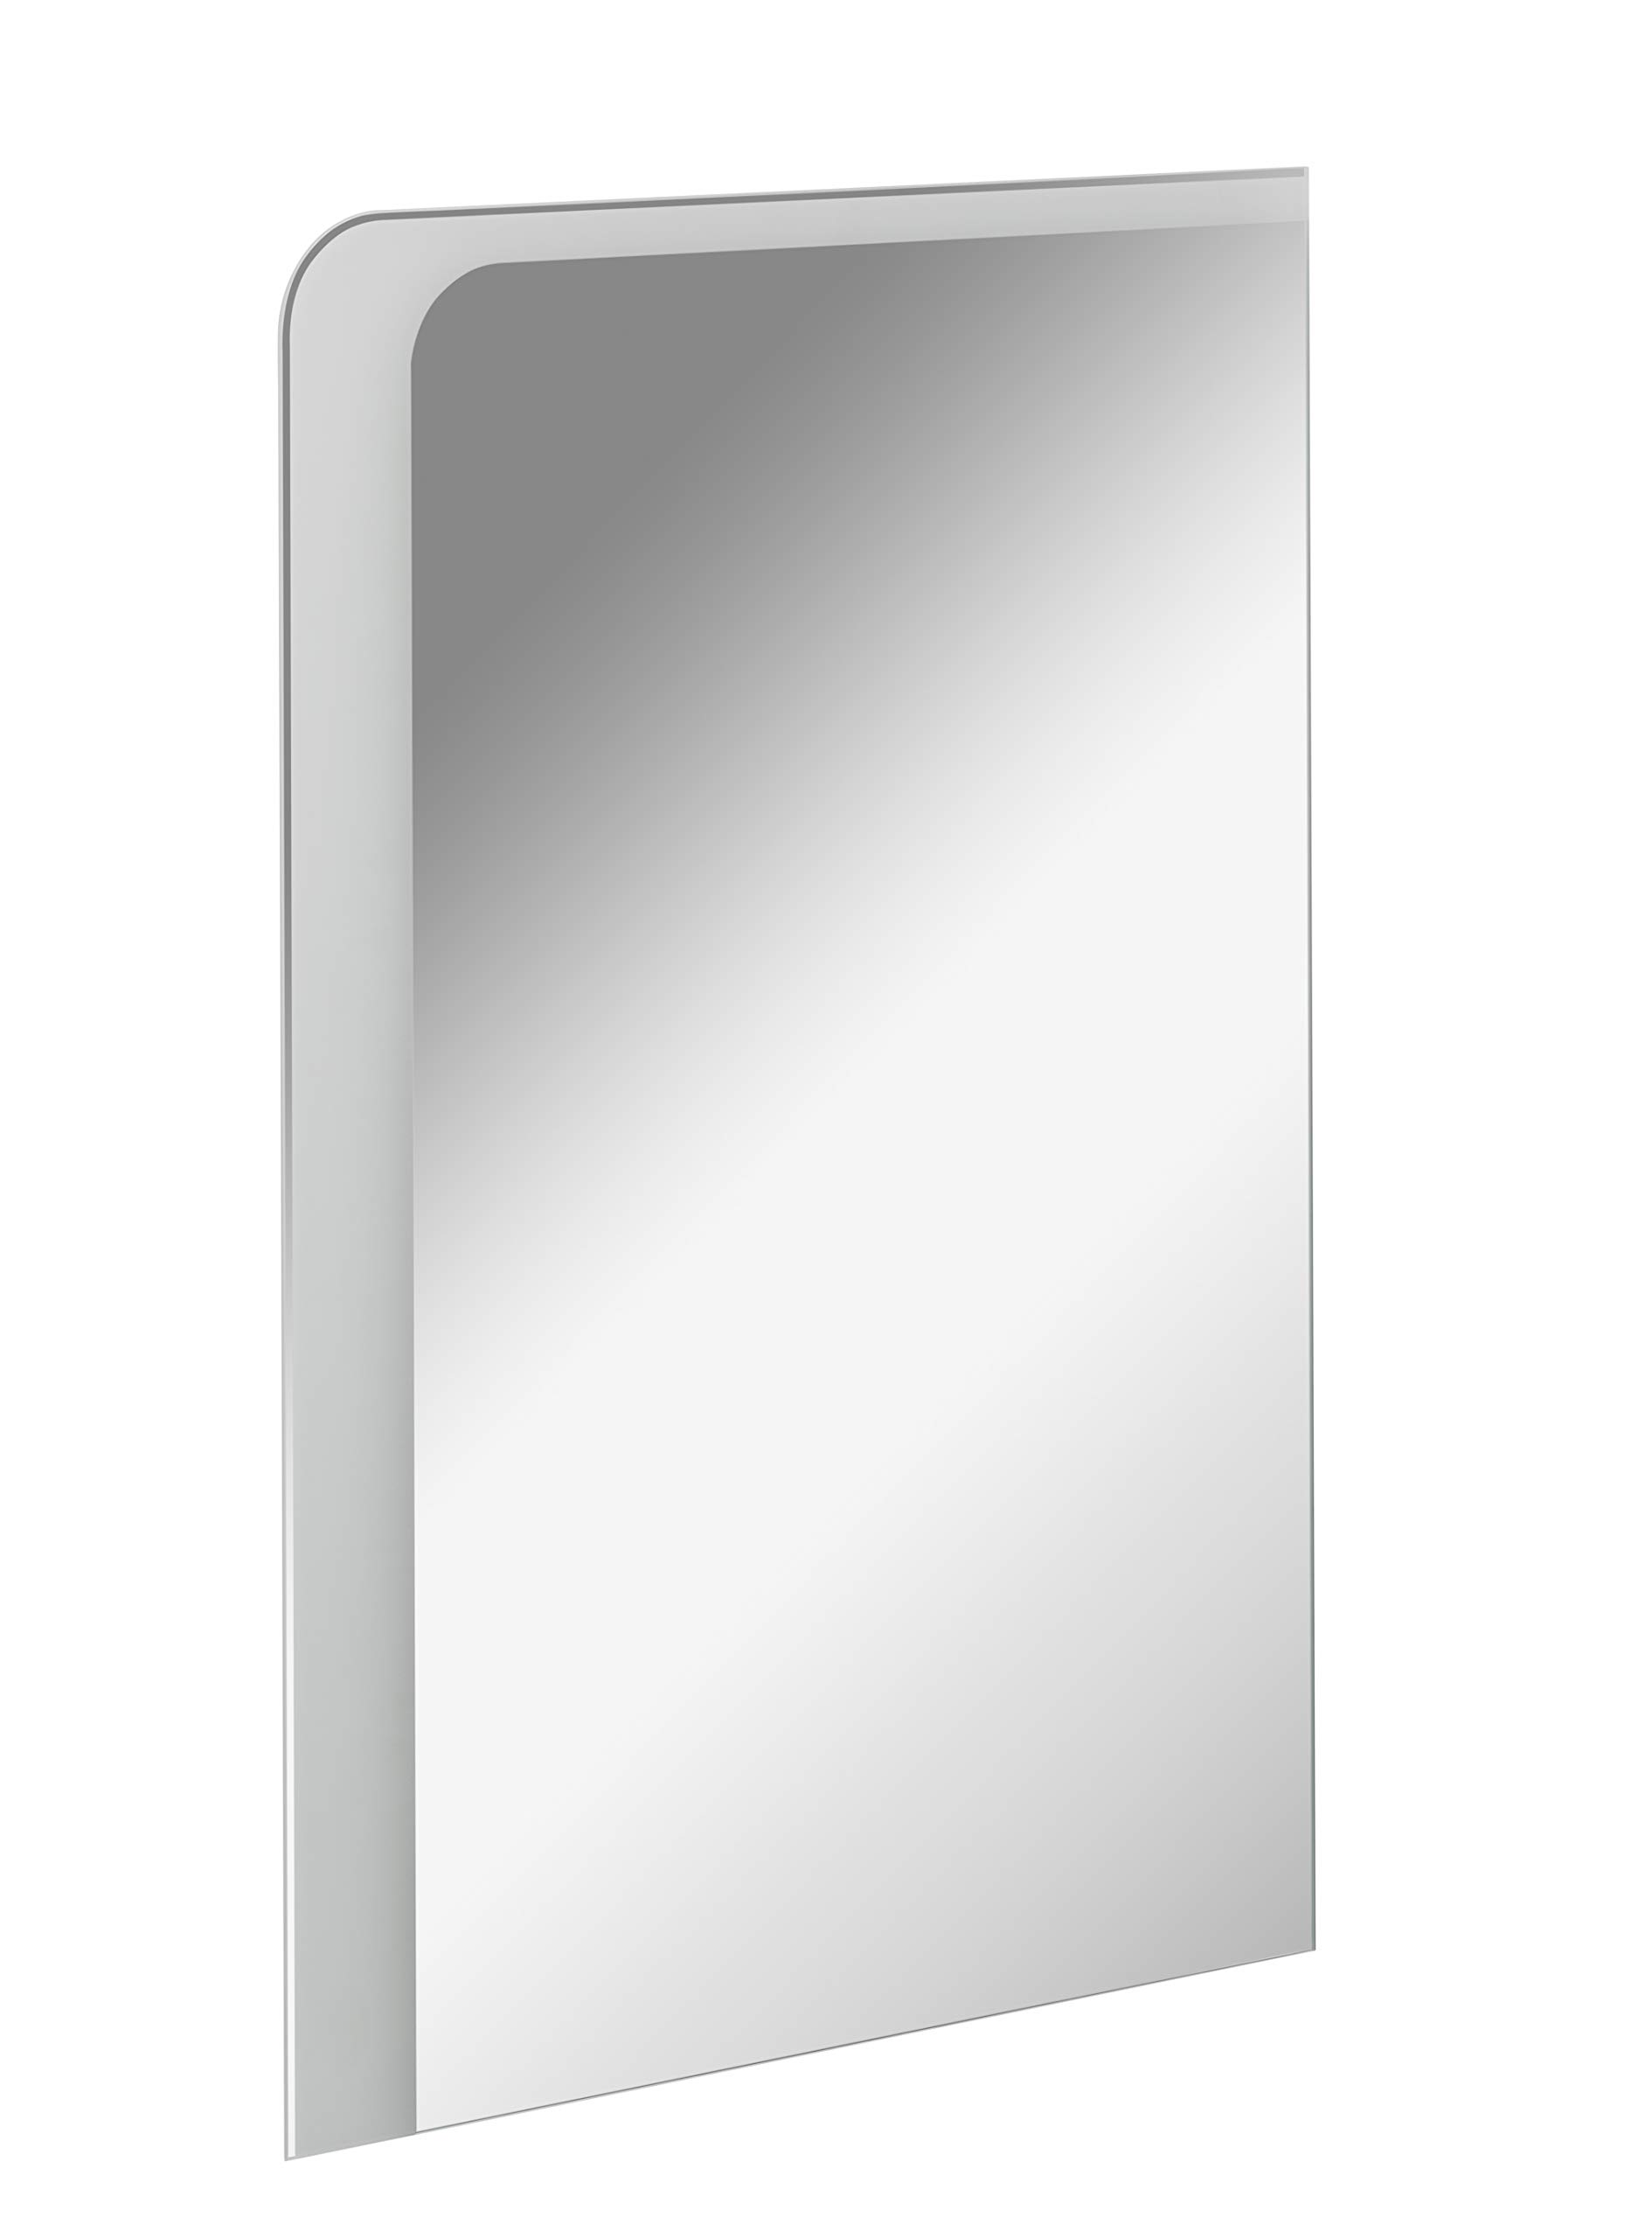 FACKELMANN LED Spiegel Milano 55 / Wandspiegel mit Design-LED-Beleuchtung/Maße (B x H x T): ca. 55 x 80 x 3 cm/Lichtfarbe: Kaltweiß/Leistung: 11,8 Watt/Badspiegel mit austauschbaren LEDs